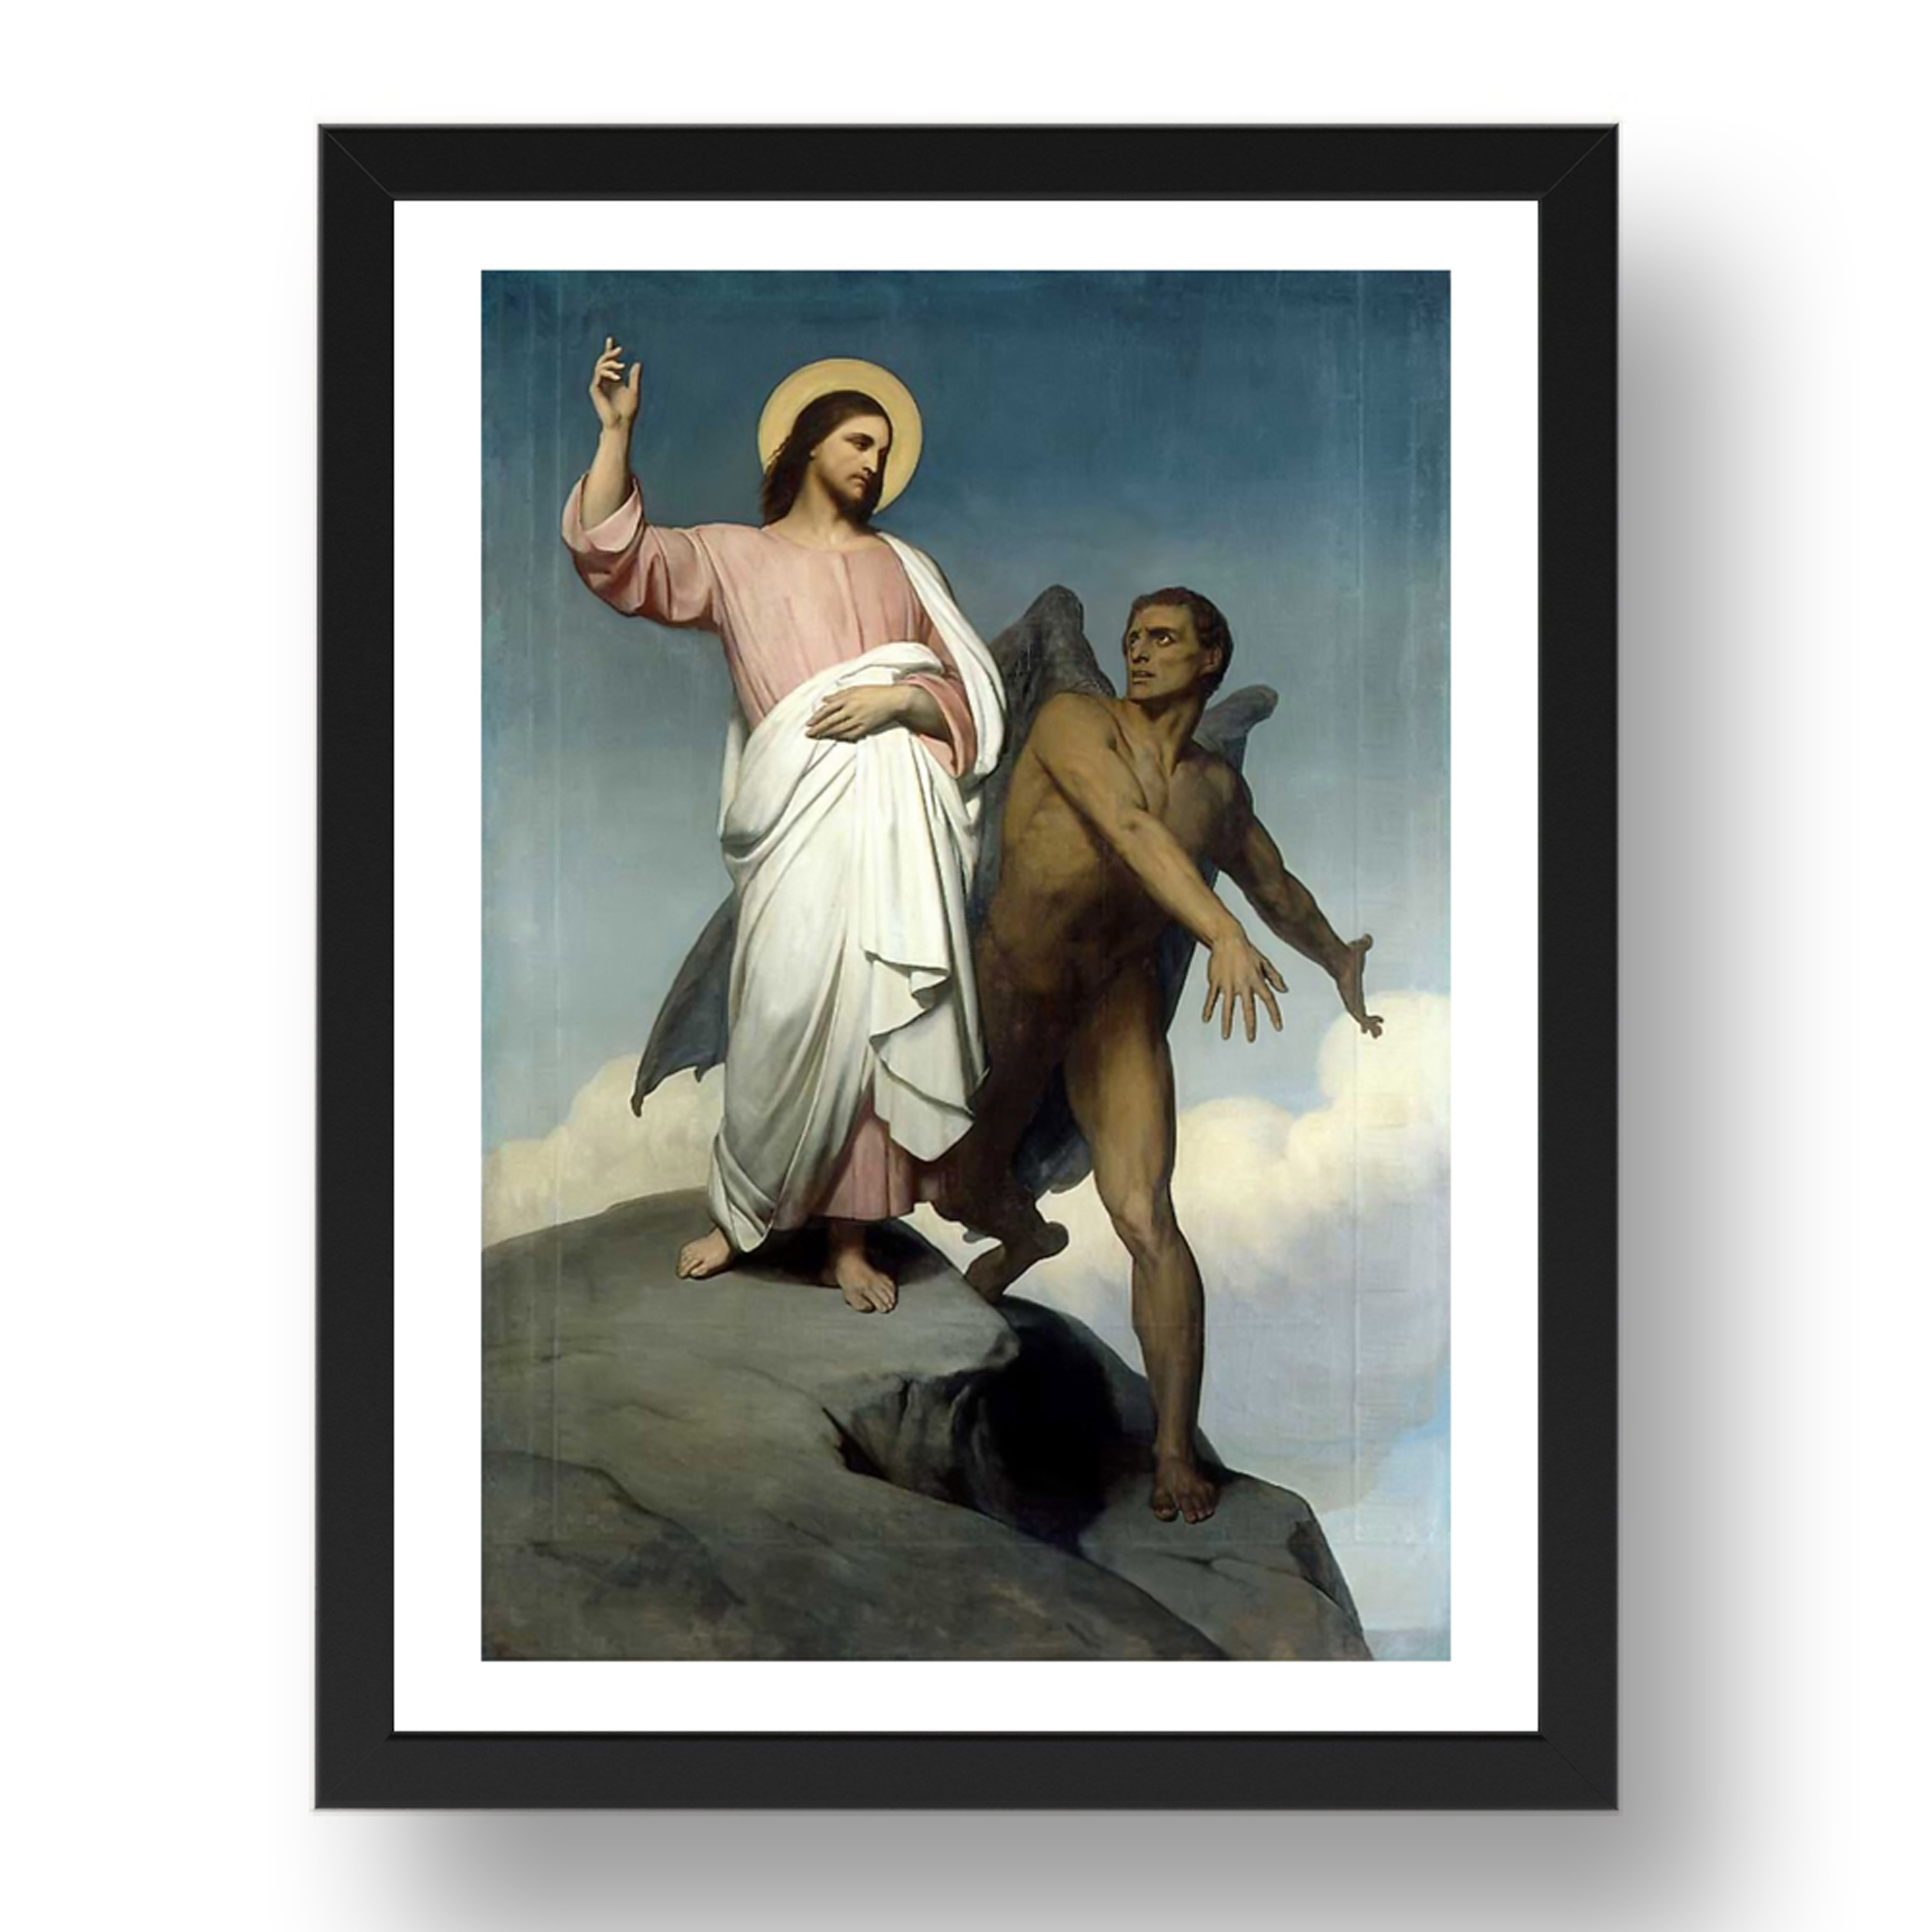 Ary Scheffer - Die Versuchung Christi [1854], A3 (17x13") schwarzer Rahmen - Bild 1 von 1